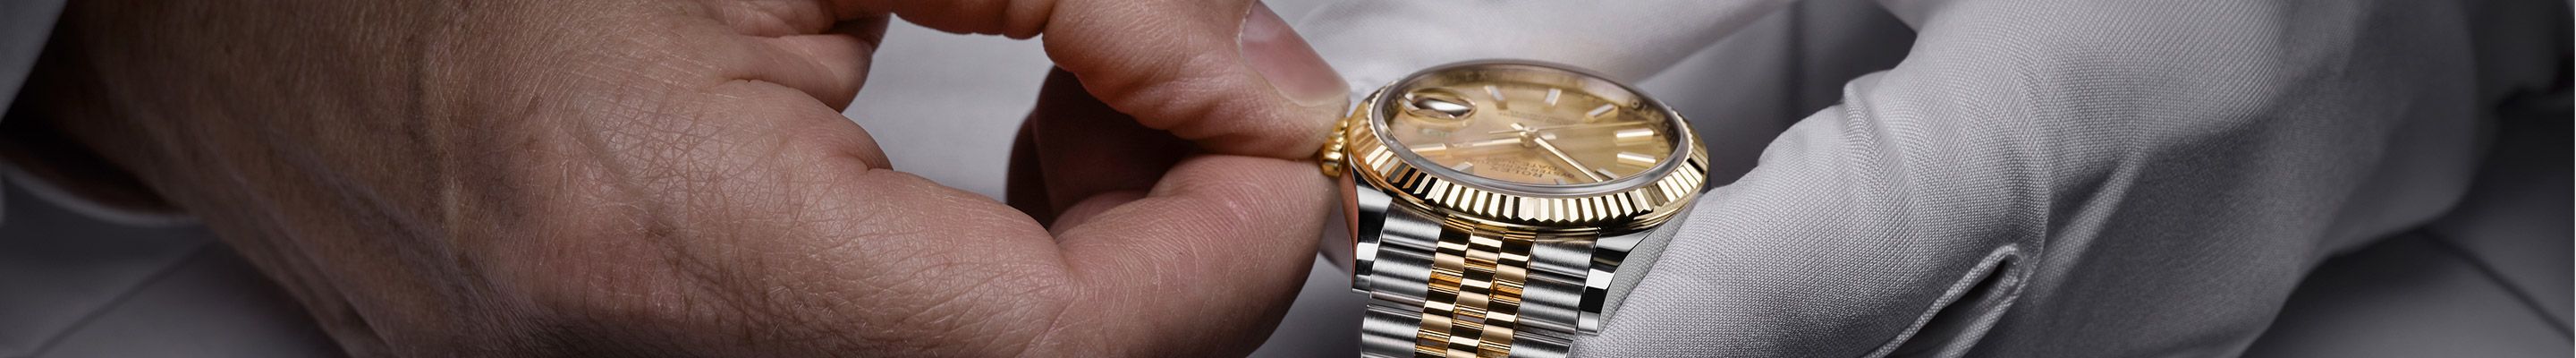 Wartung und Reparatur Ihrer Rolex Uhr bei Juwelier Gadebusch